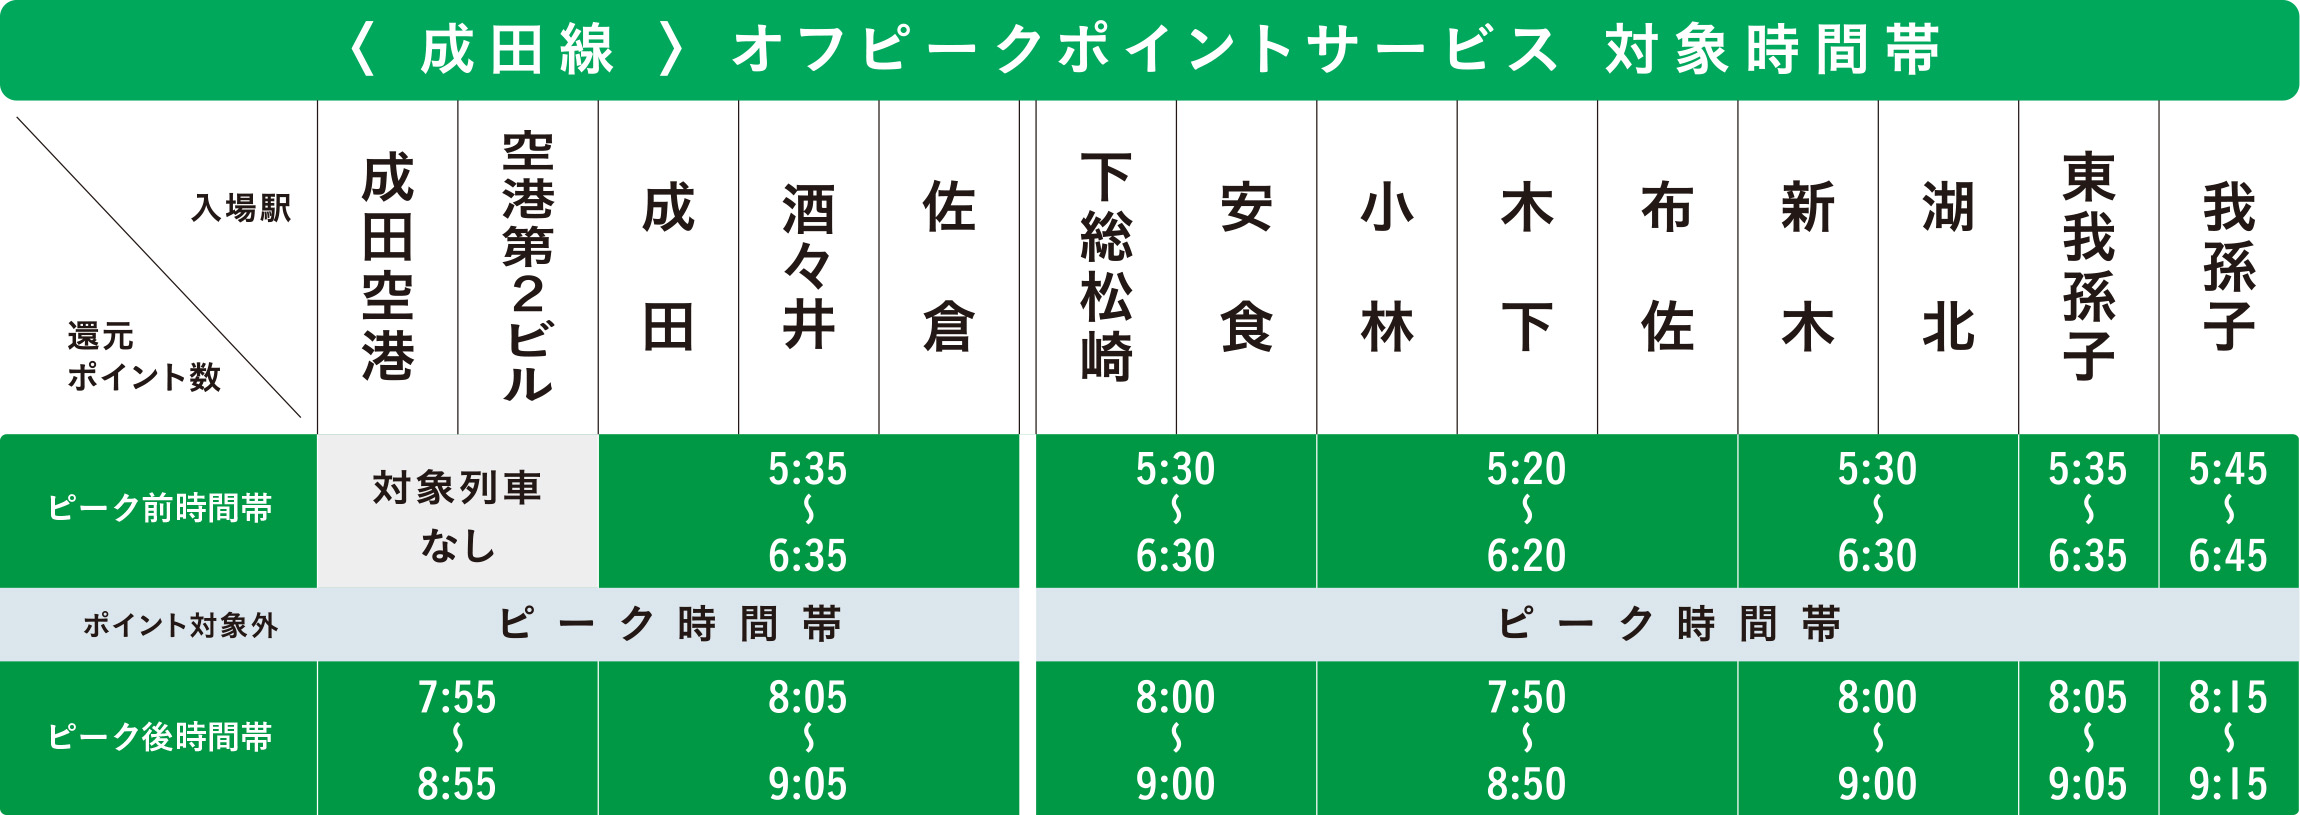 成田線オフピークポイントサービス対象時間帯